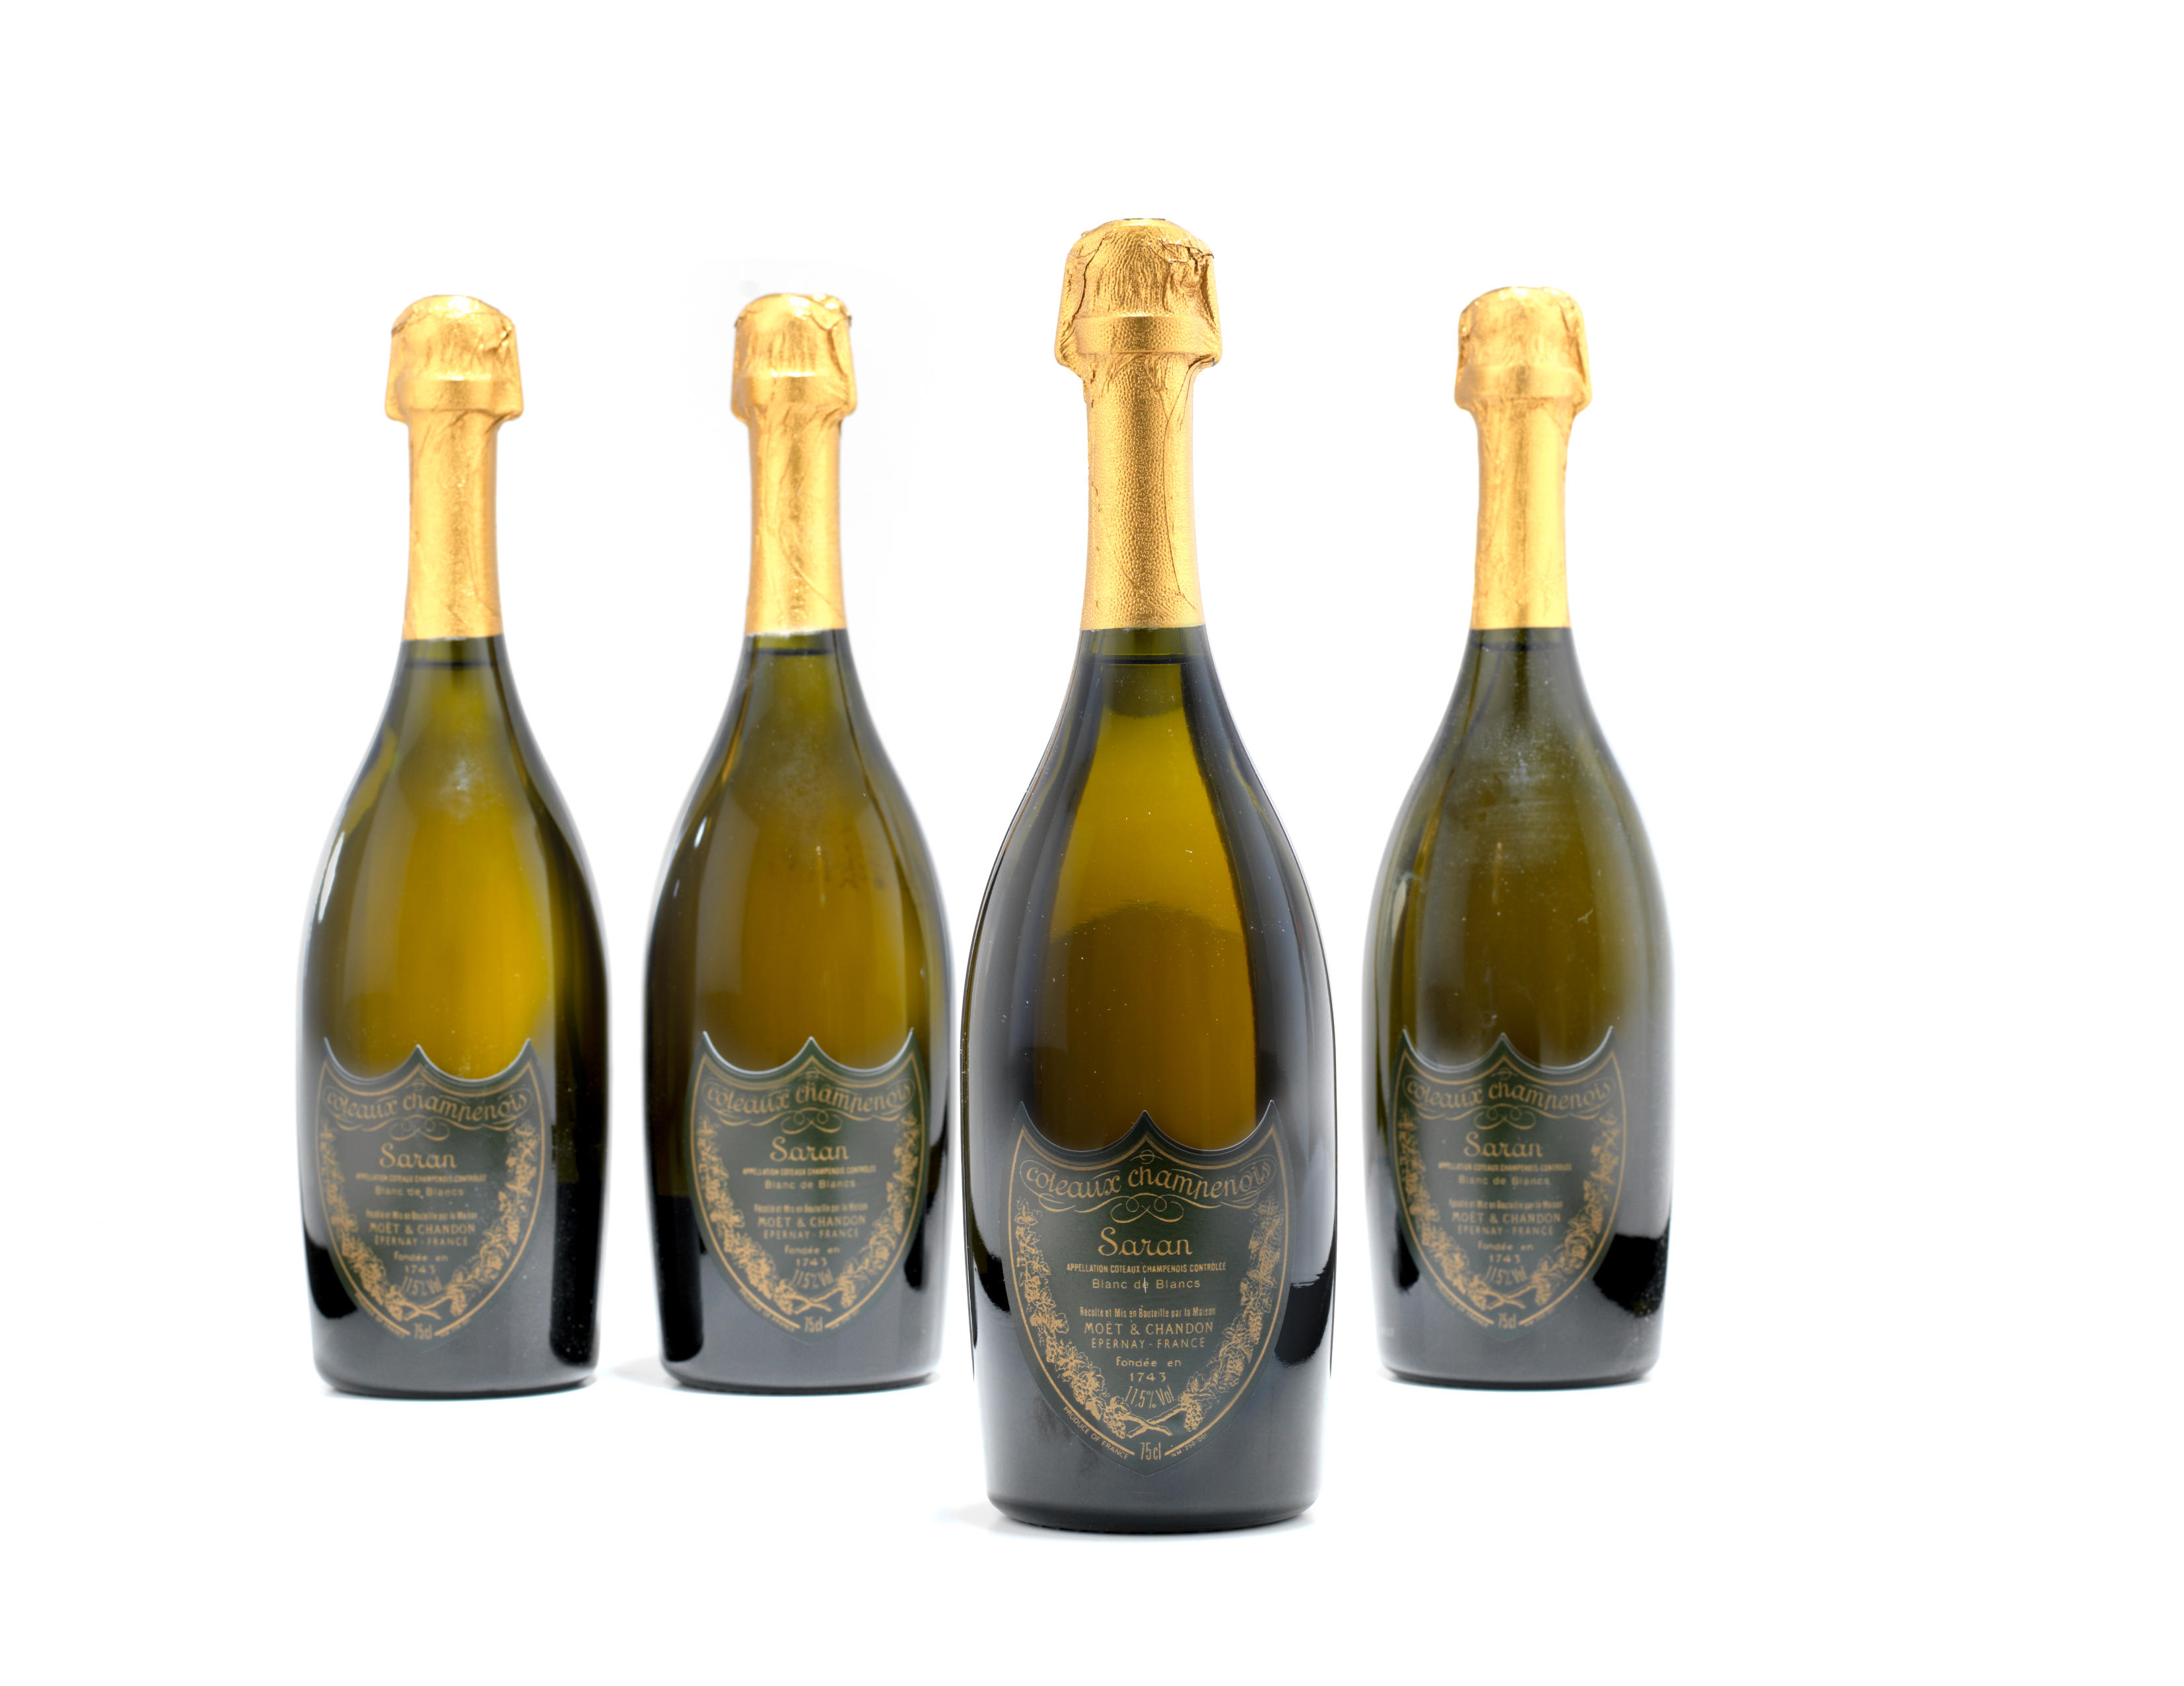 Moet & Chandon - Champagne Dom Perignon Vintage Brut 1969 - 0,77 l